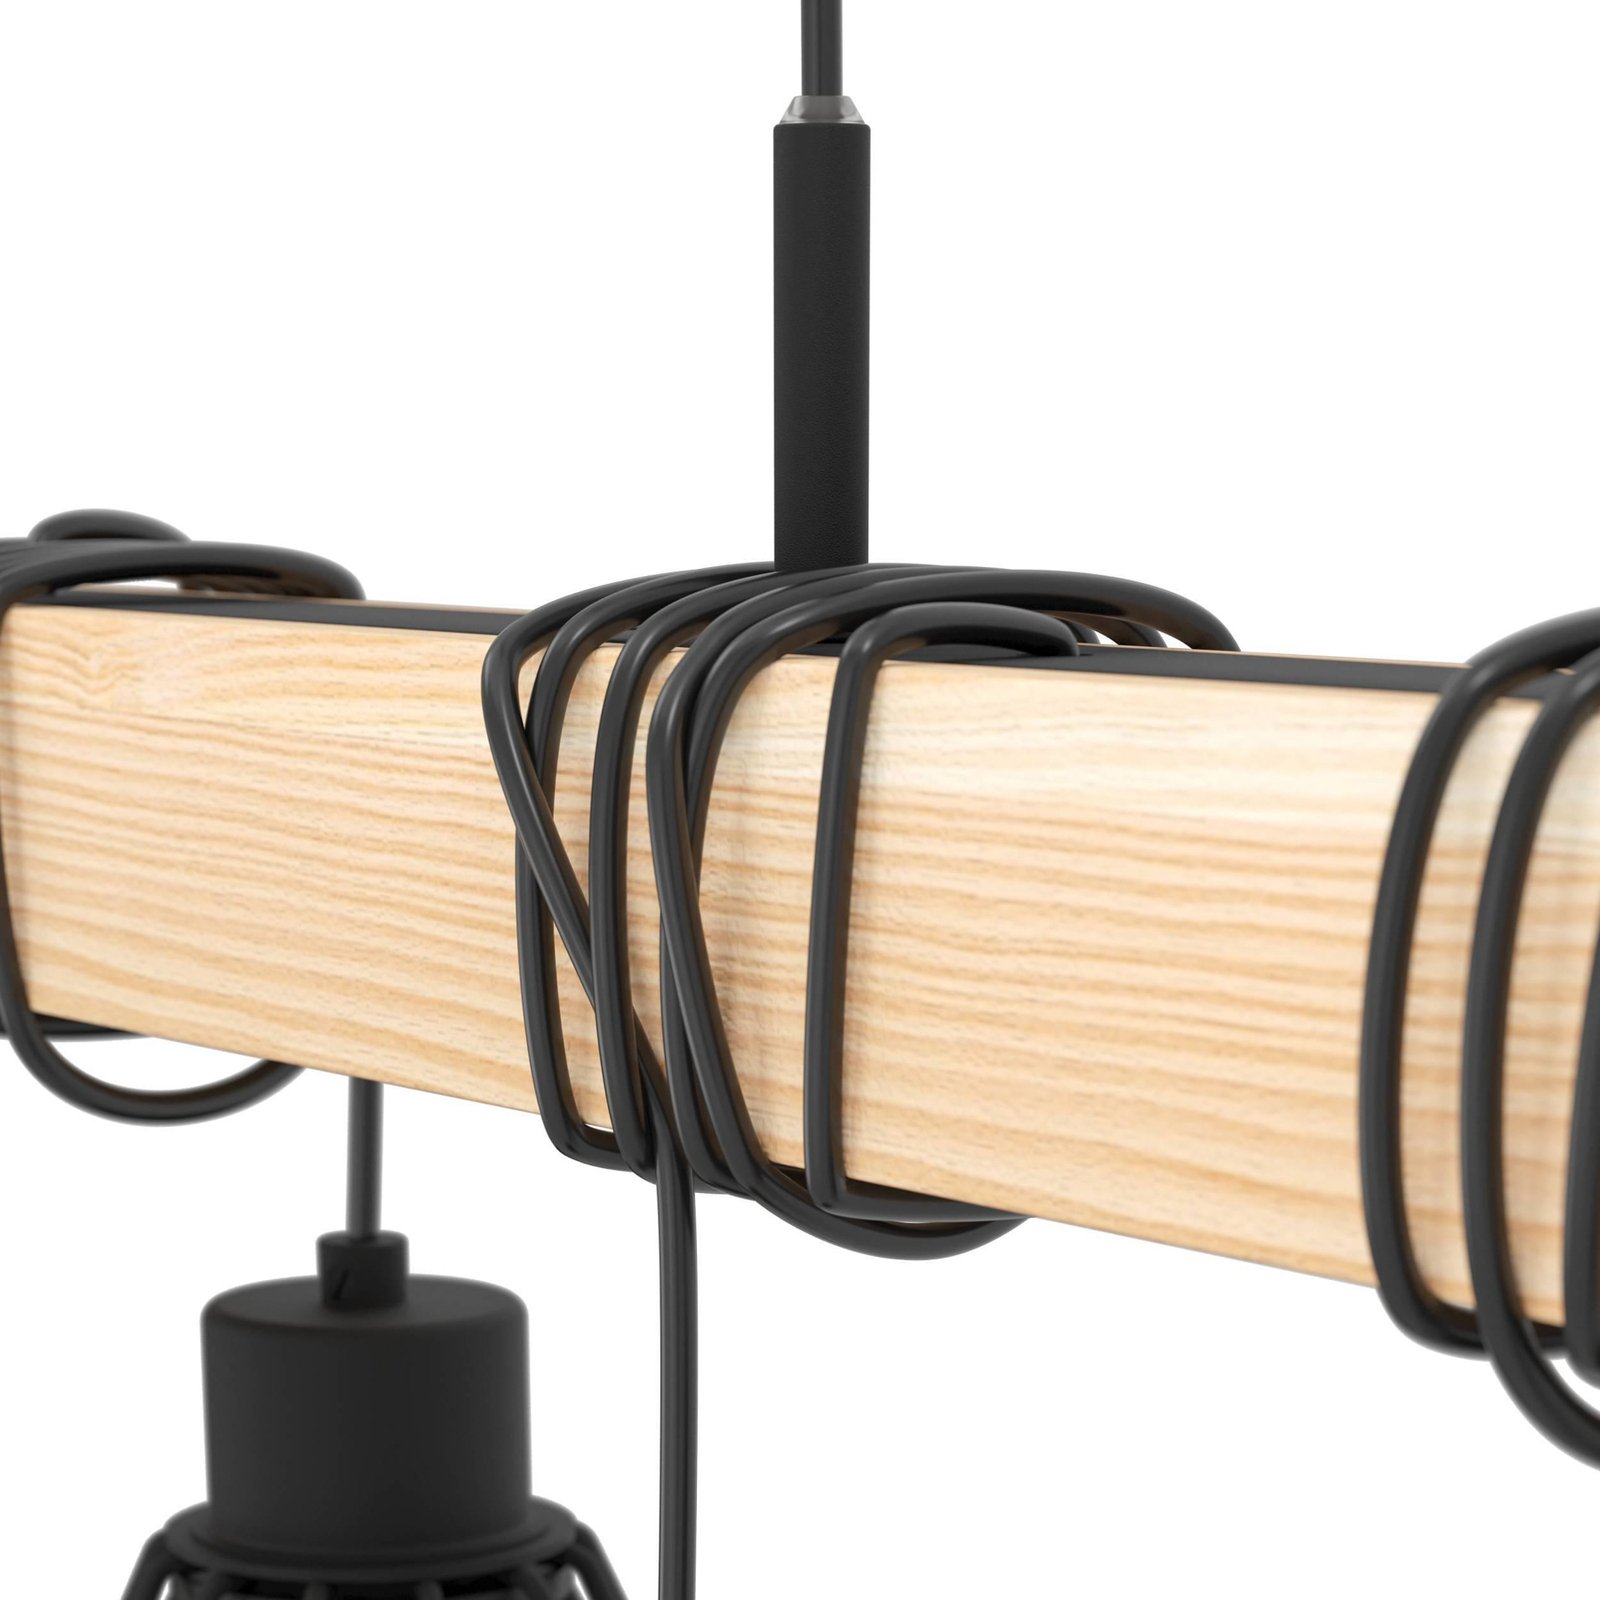 Townshend hanglamp, lengte 150 cm, zwart/eiken, 9-lamps.